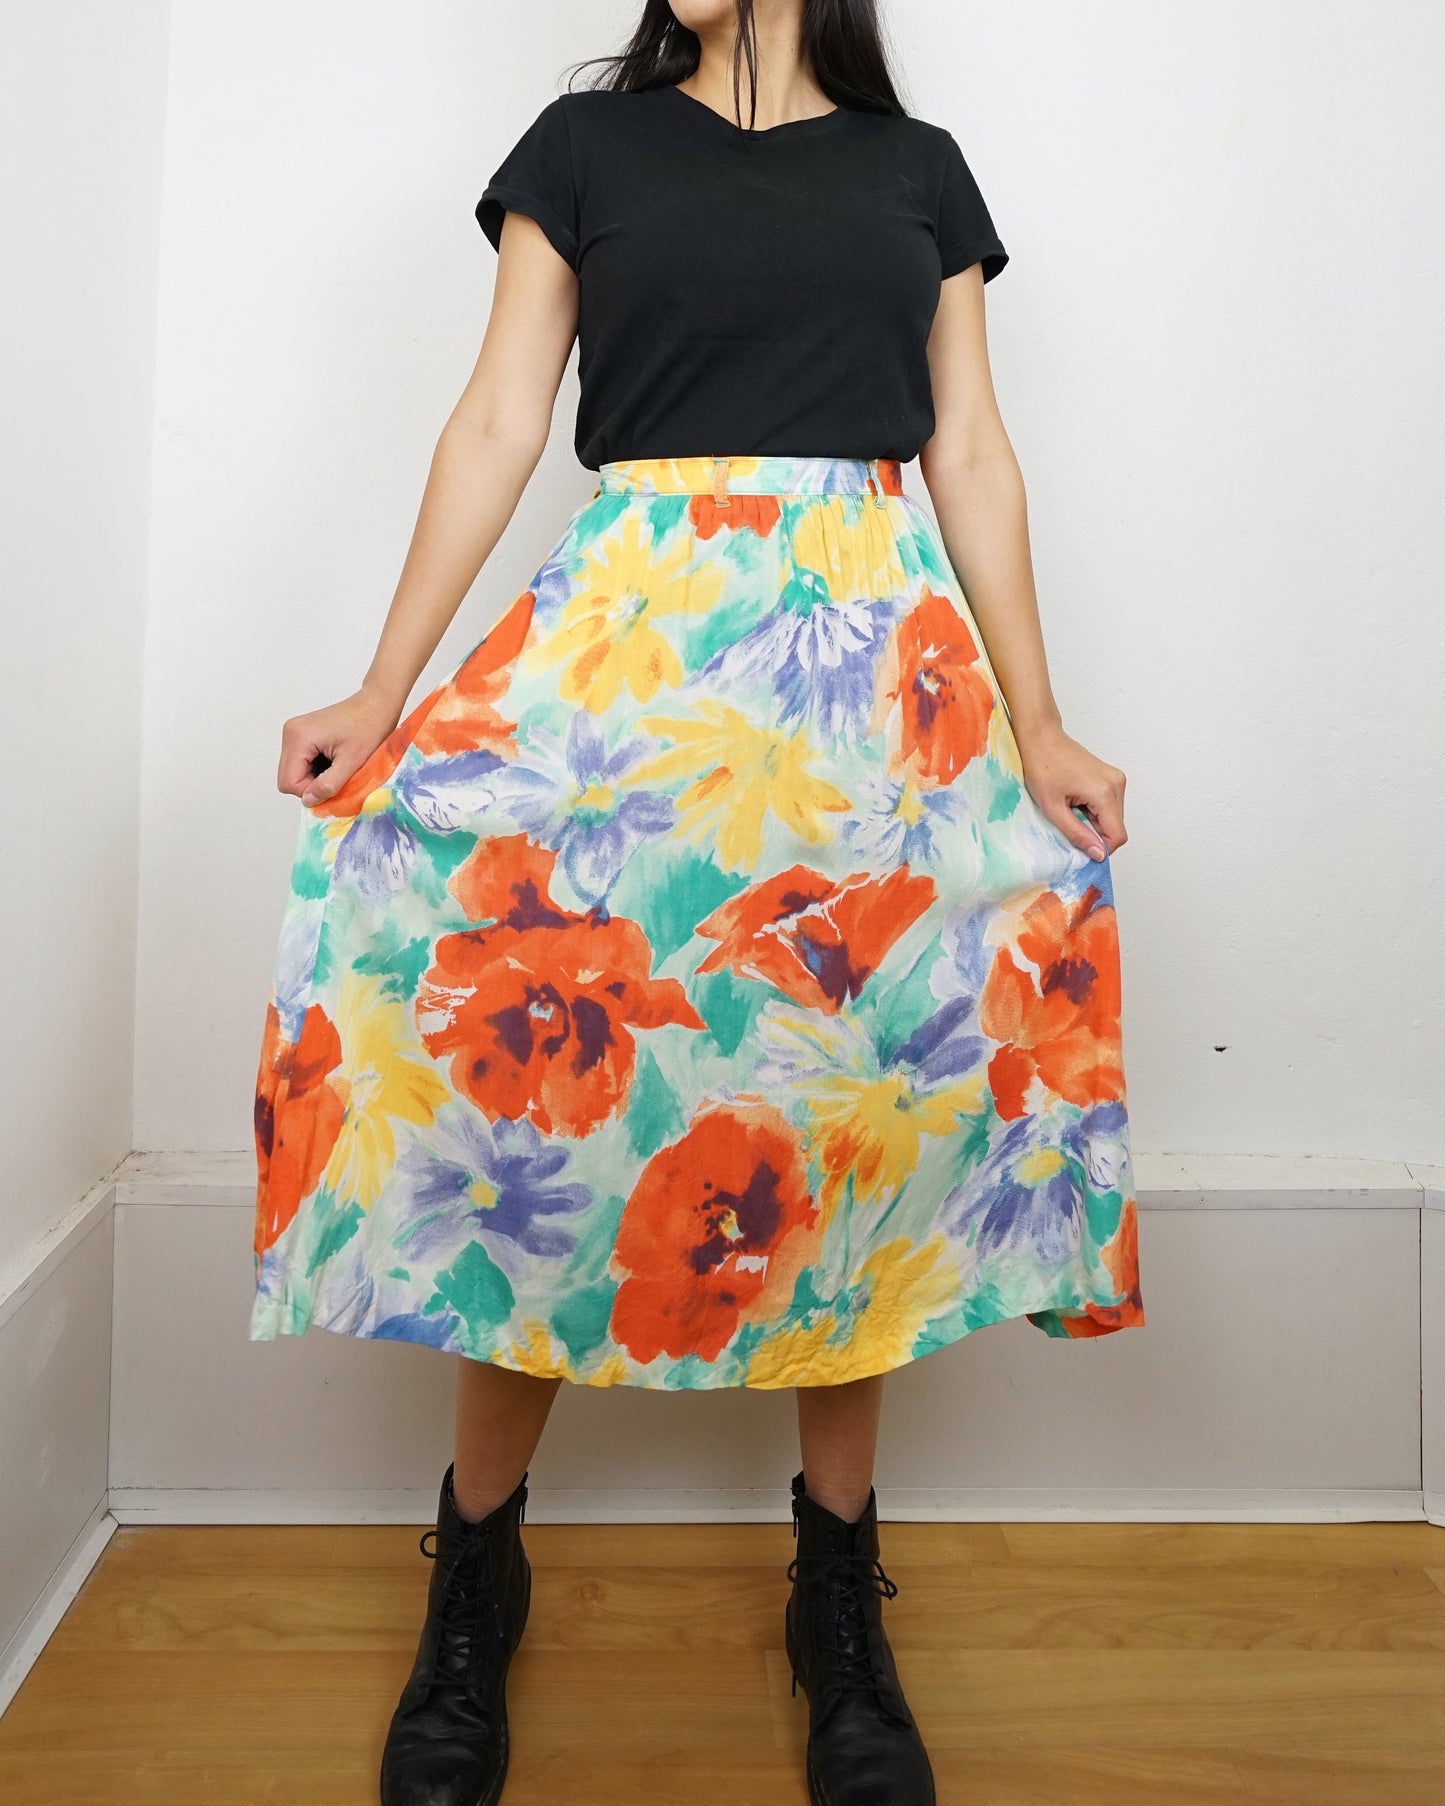 Vintage floral Skirt size S